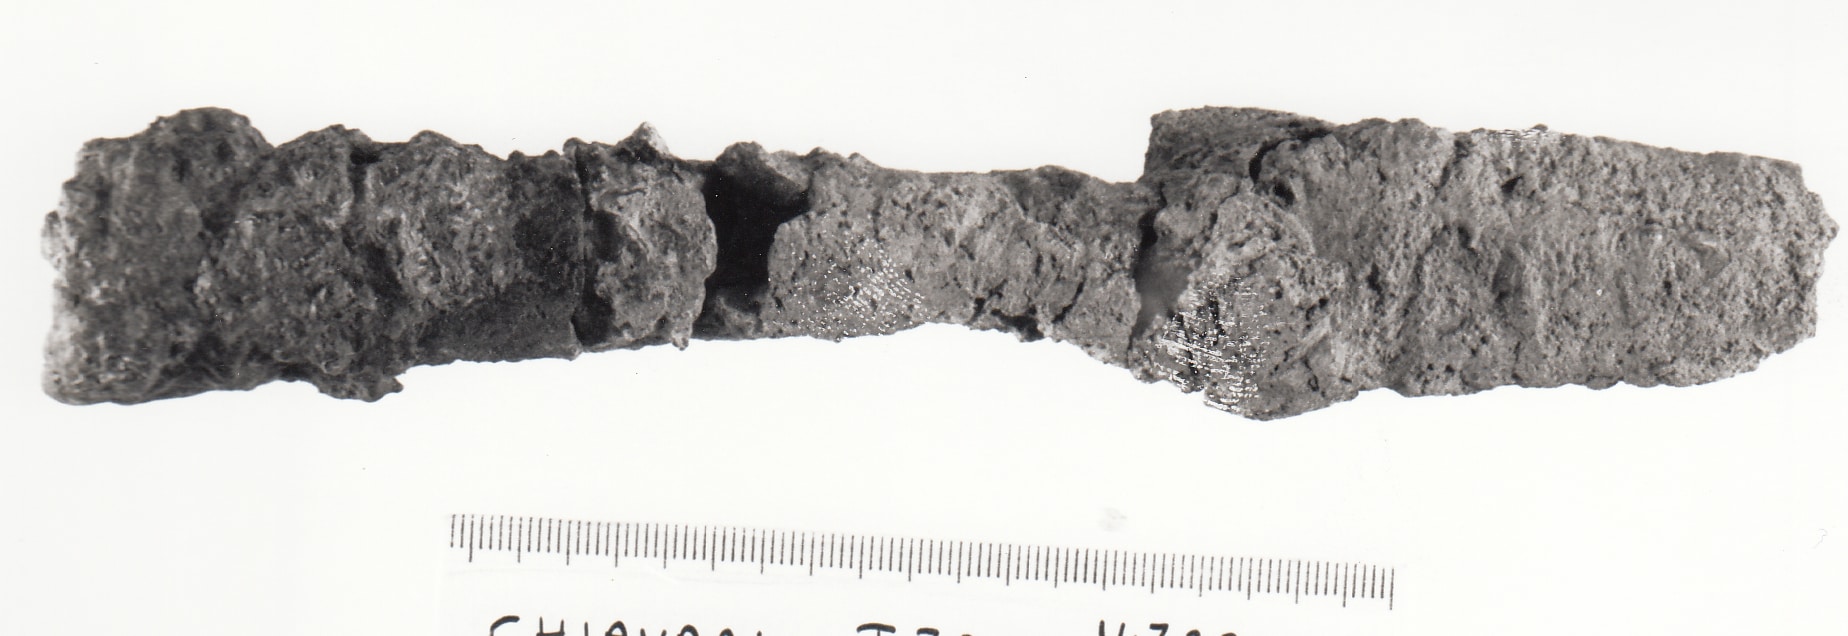 punta di giavellotto - cultura ligure della prima età del Ferro (VII a.C)